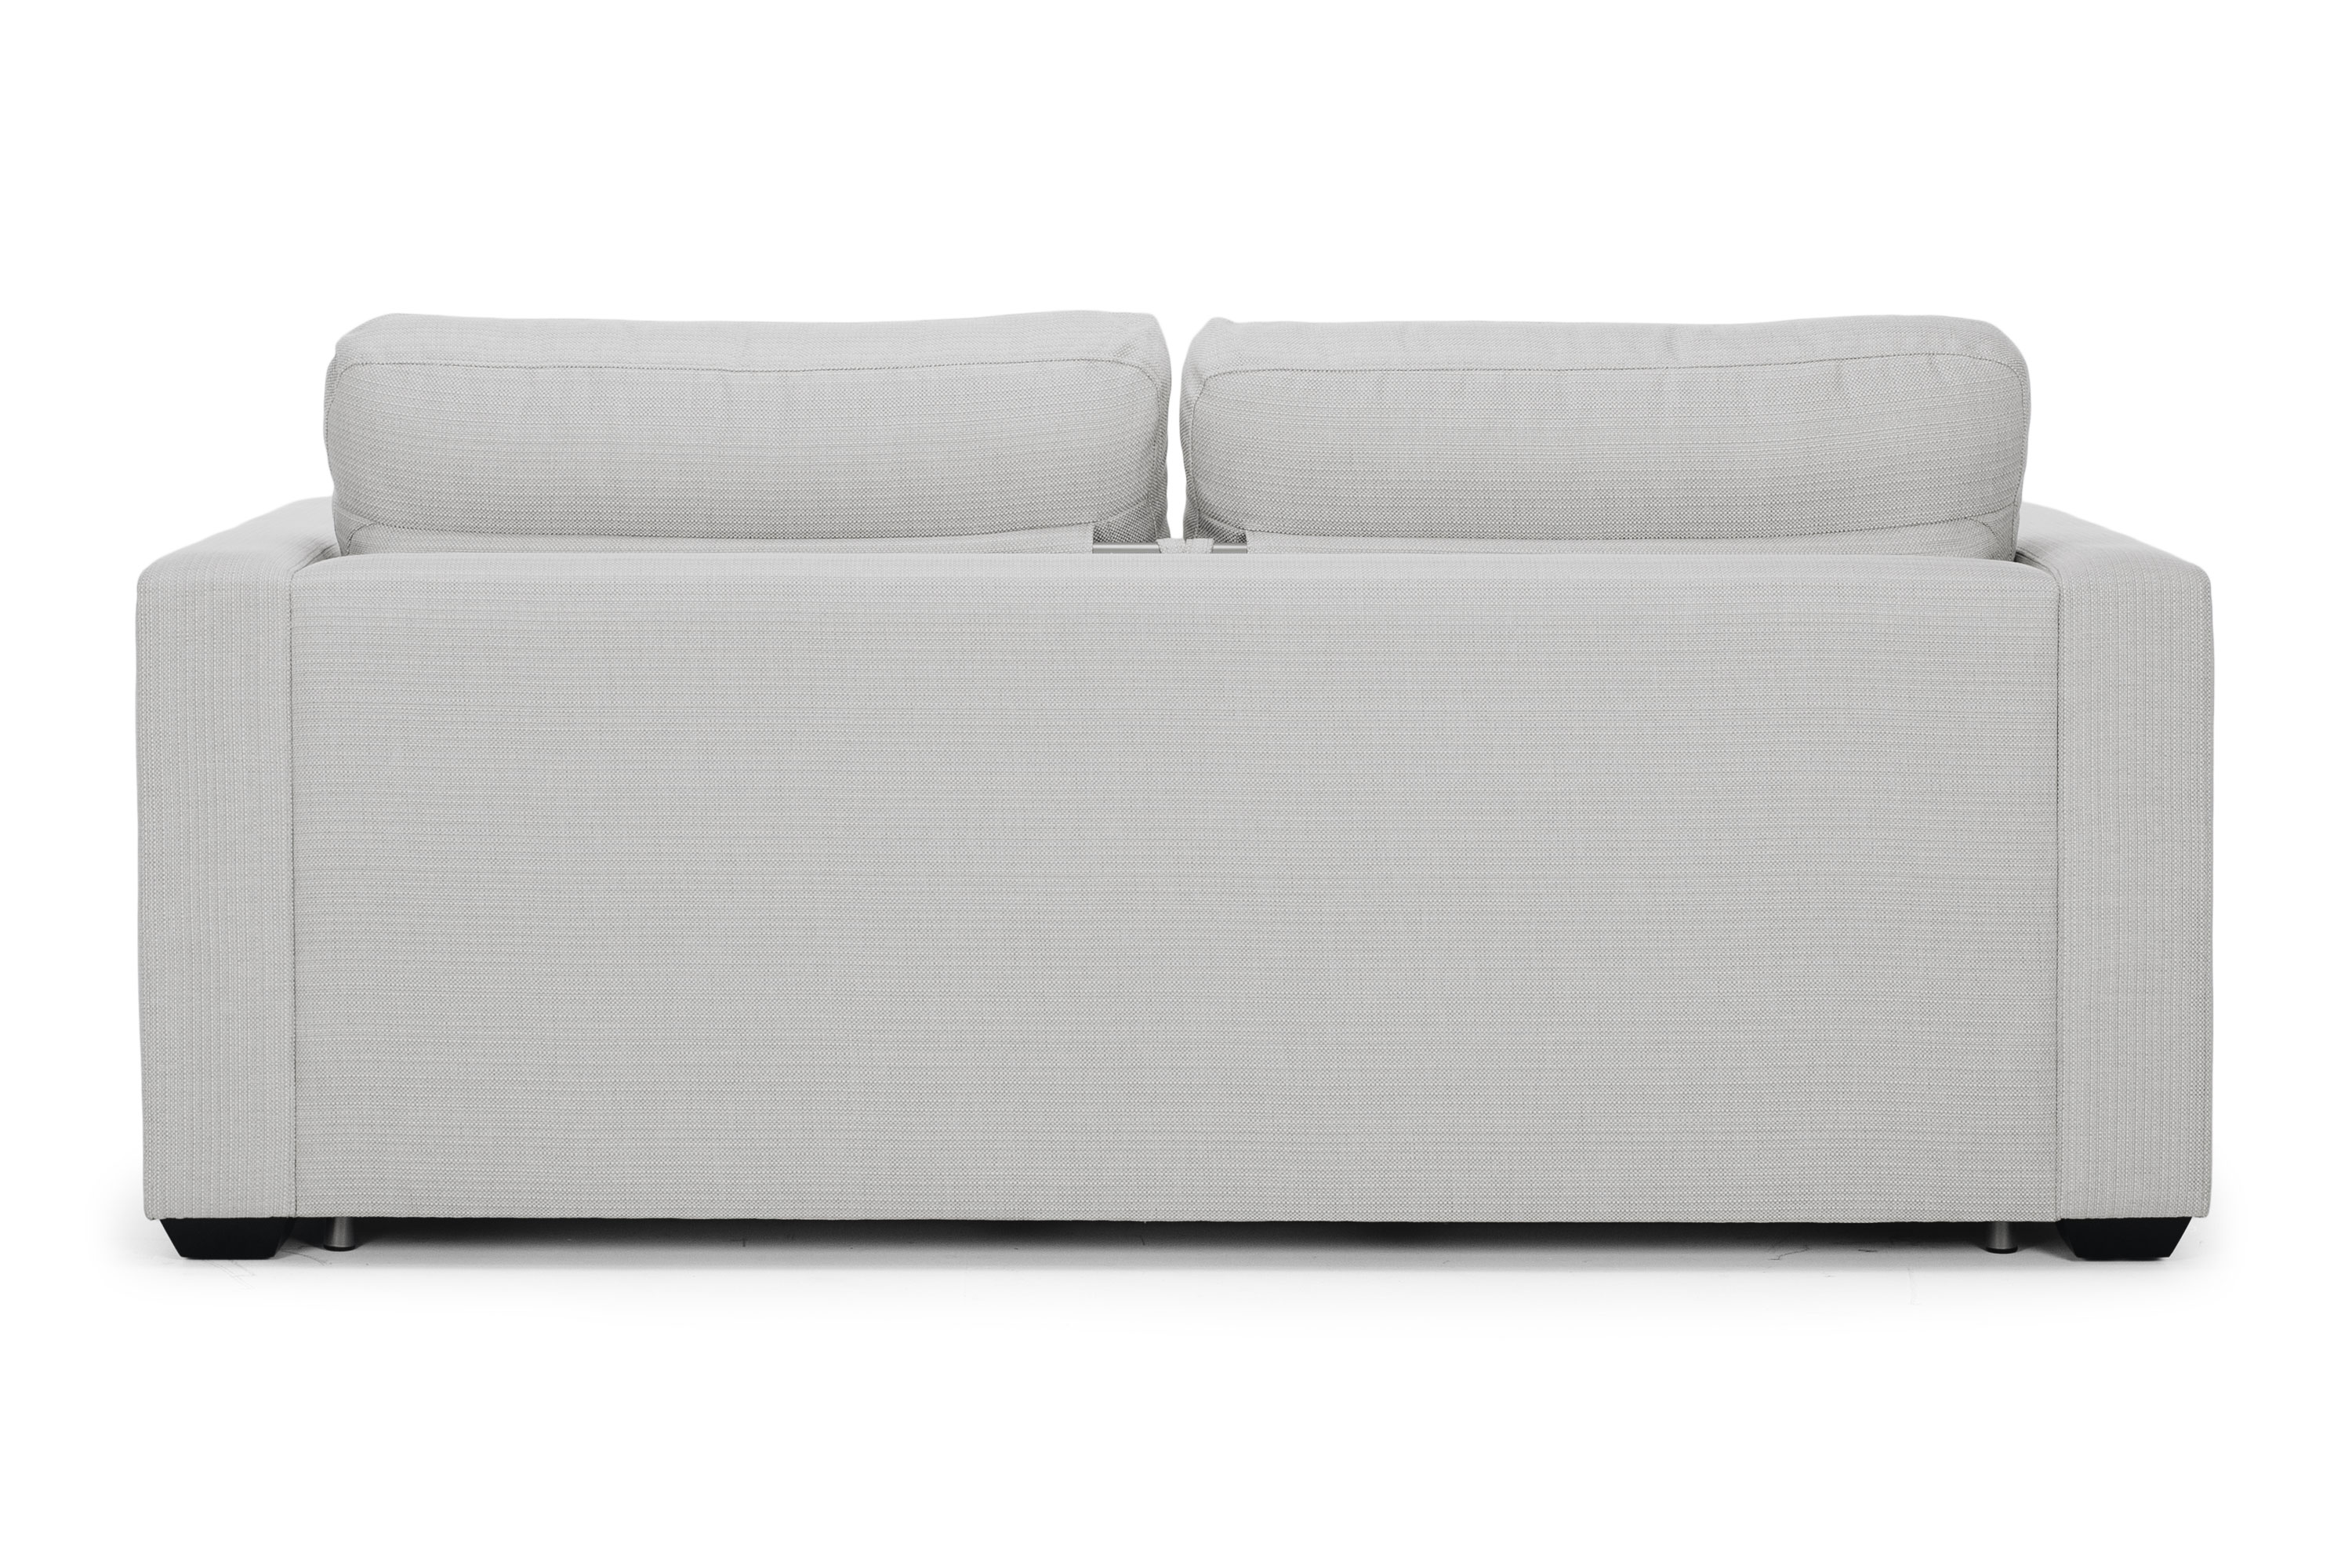 Orbit Queen Sofa Bed - Natural